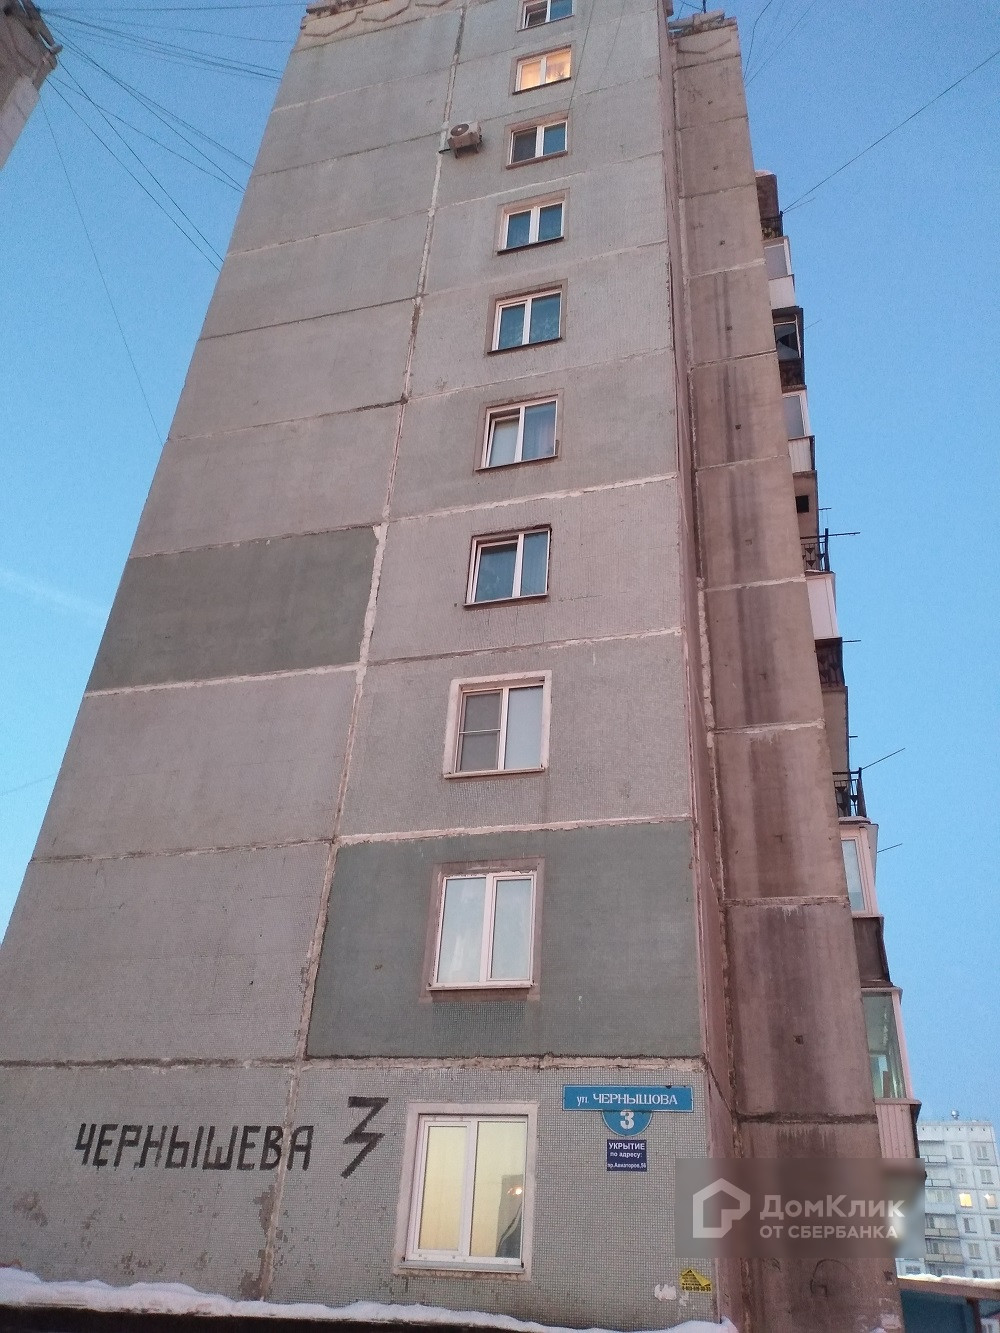 обл. Кемеровская, г. Новокузнецк, ул. Чернышова, д. 3-фасад здания